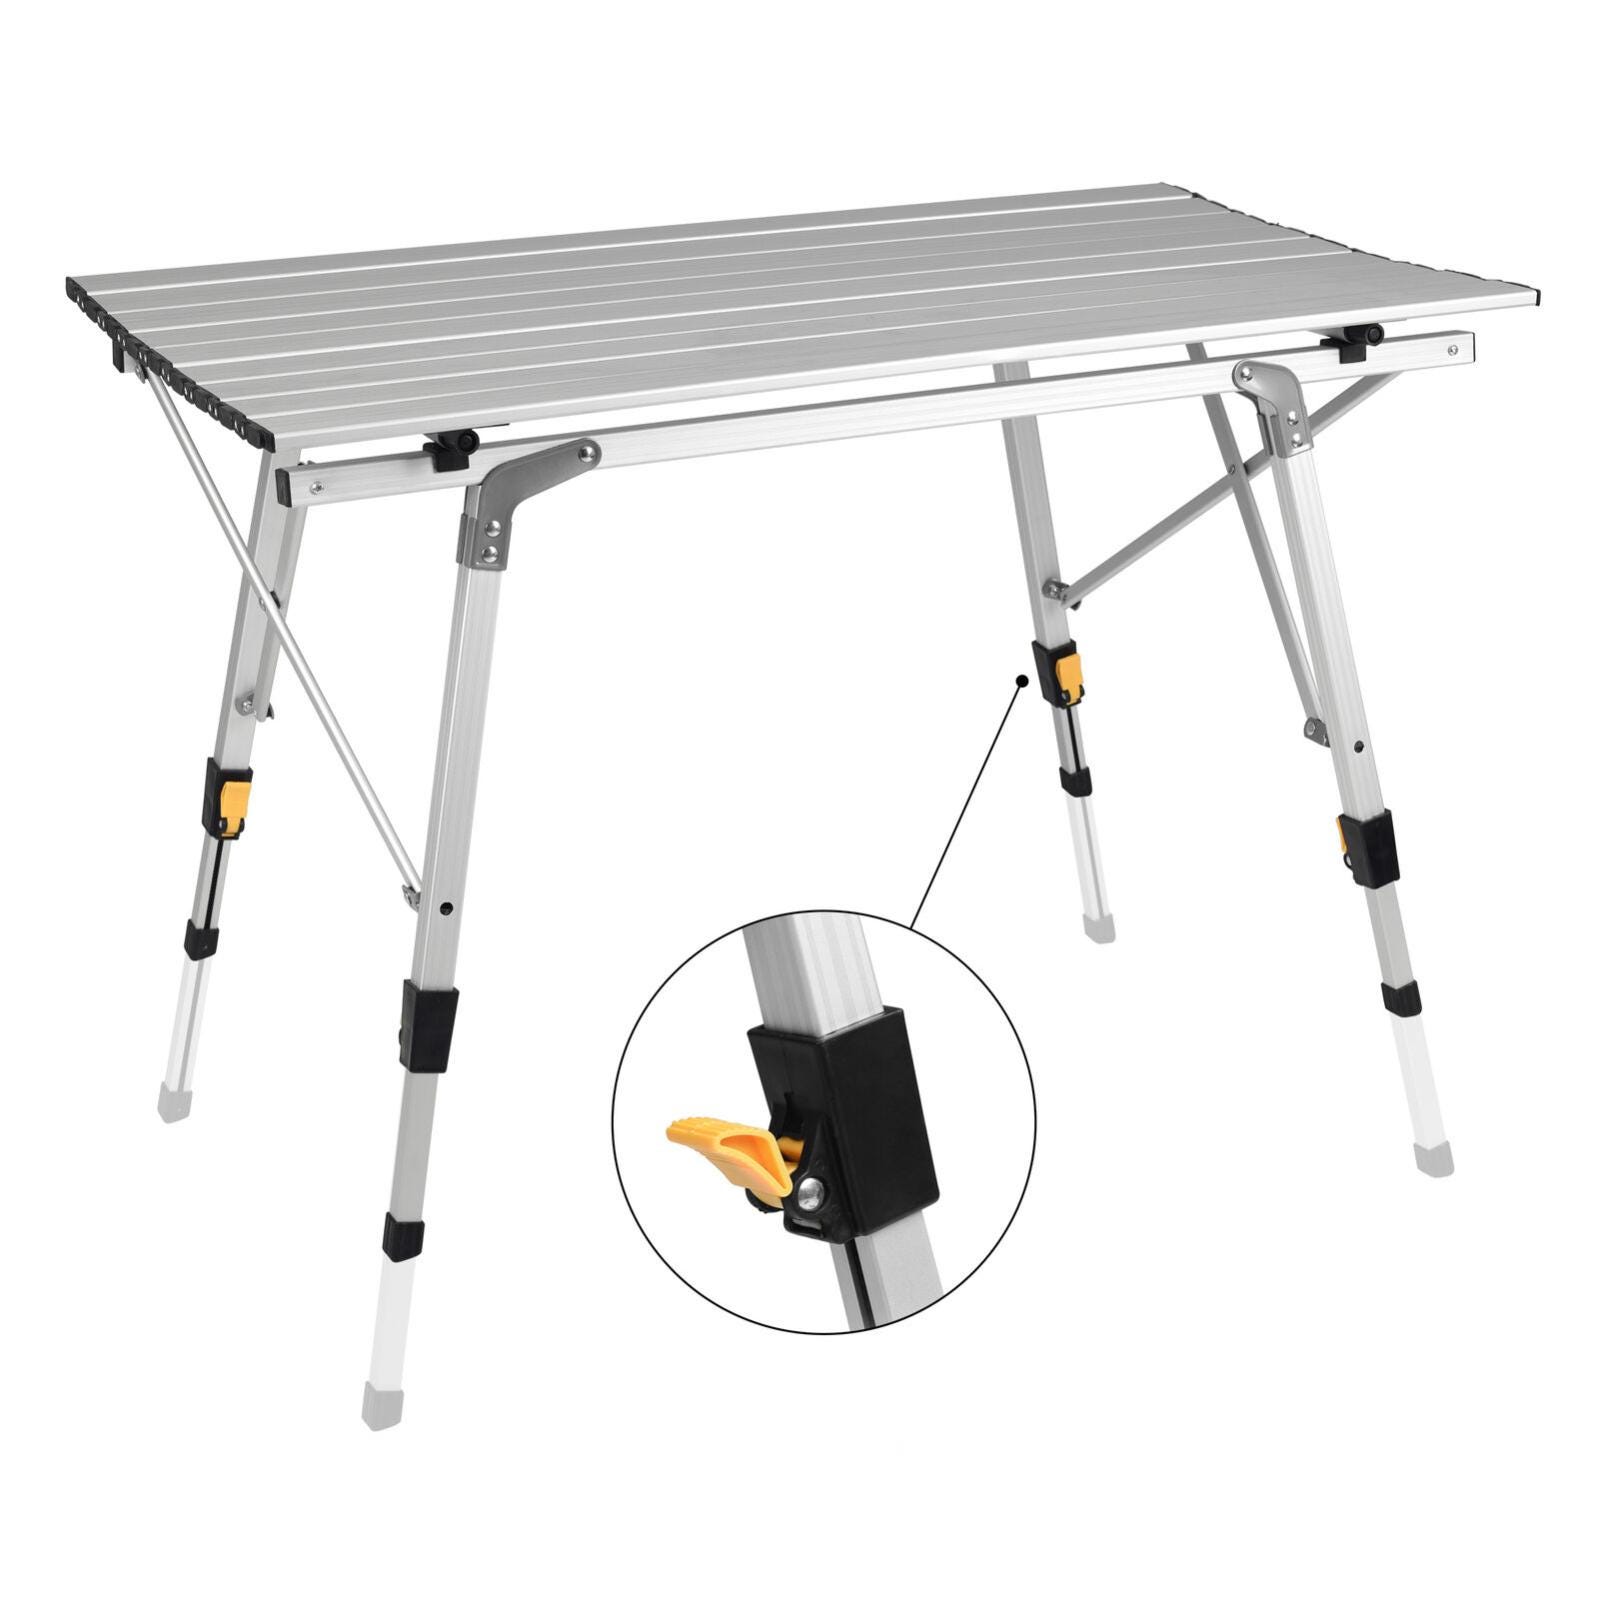 Table pliante de camping barbecue pique-nique L.90 x l.53 x H.65 cm gris